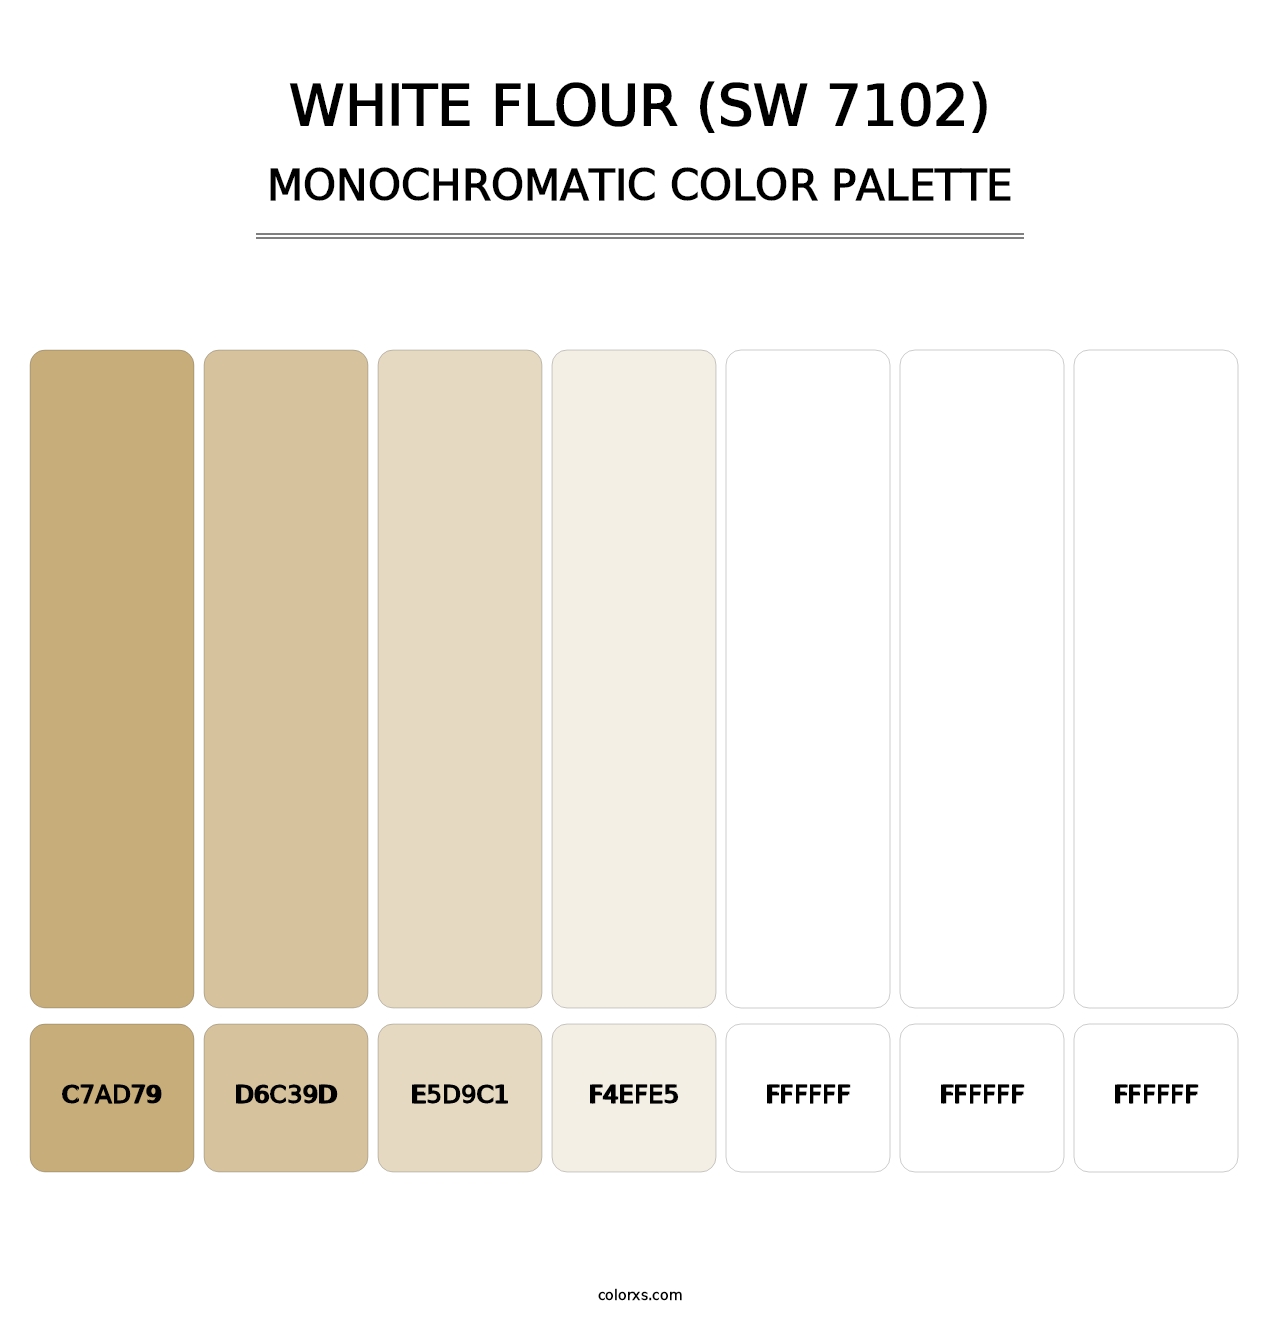 White Flour (SW 7102) - Monochromatic Color Palette